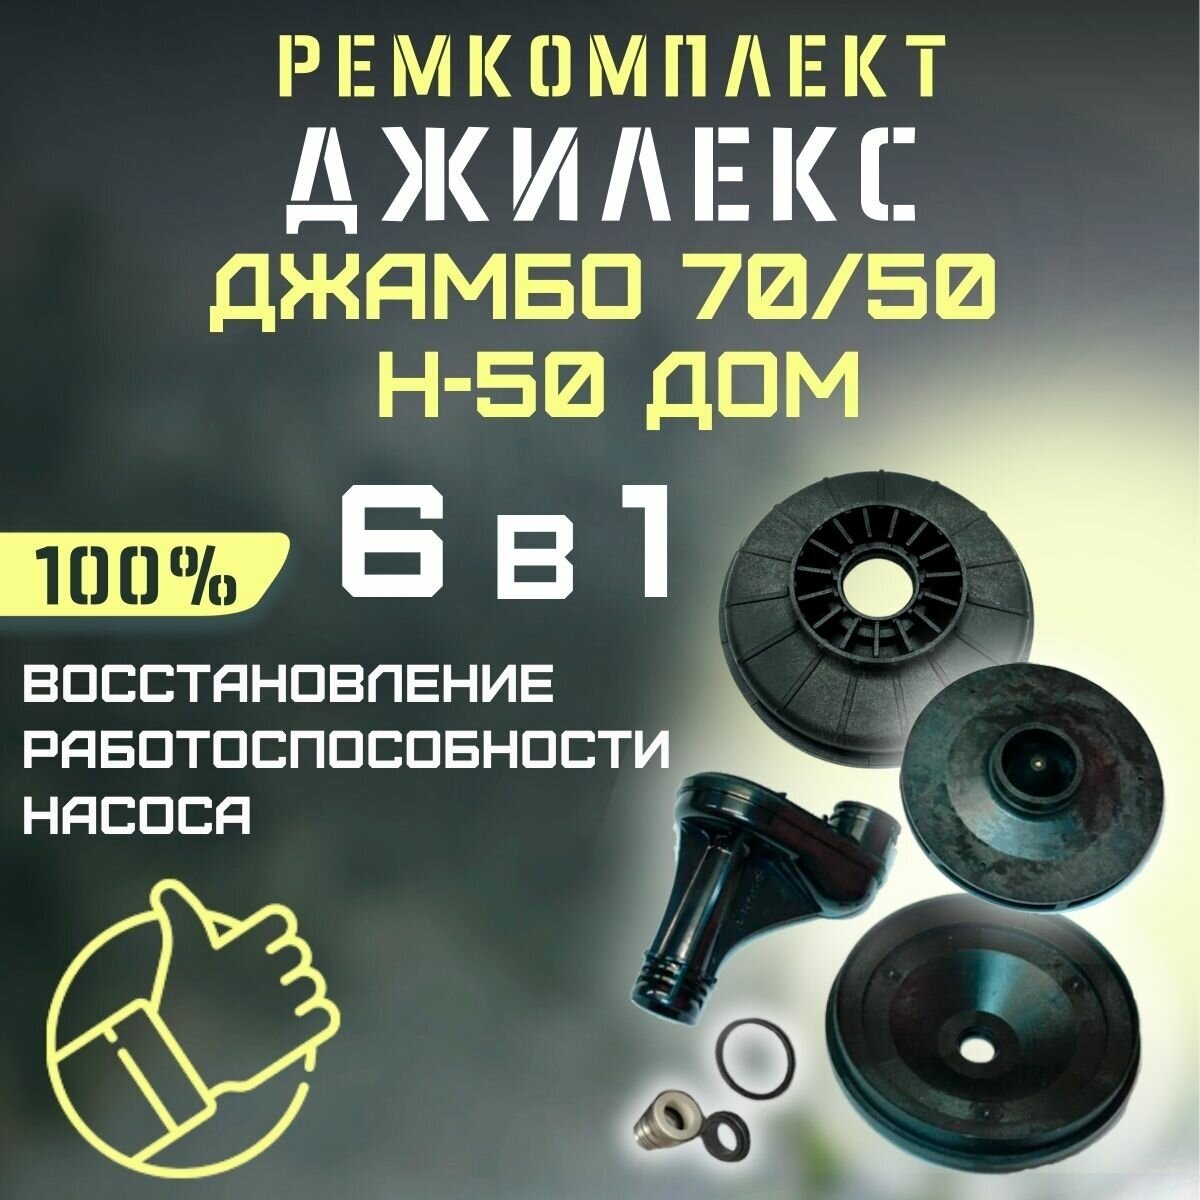 Ремкомплект Джилекс Джамбо 70/50 Н-50 ДОМ (RMKDZH7050N50d)